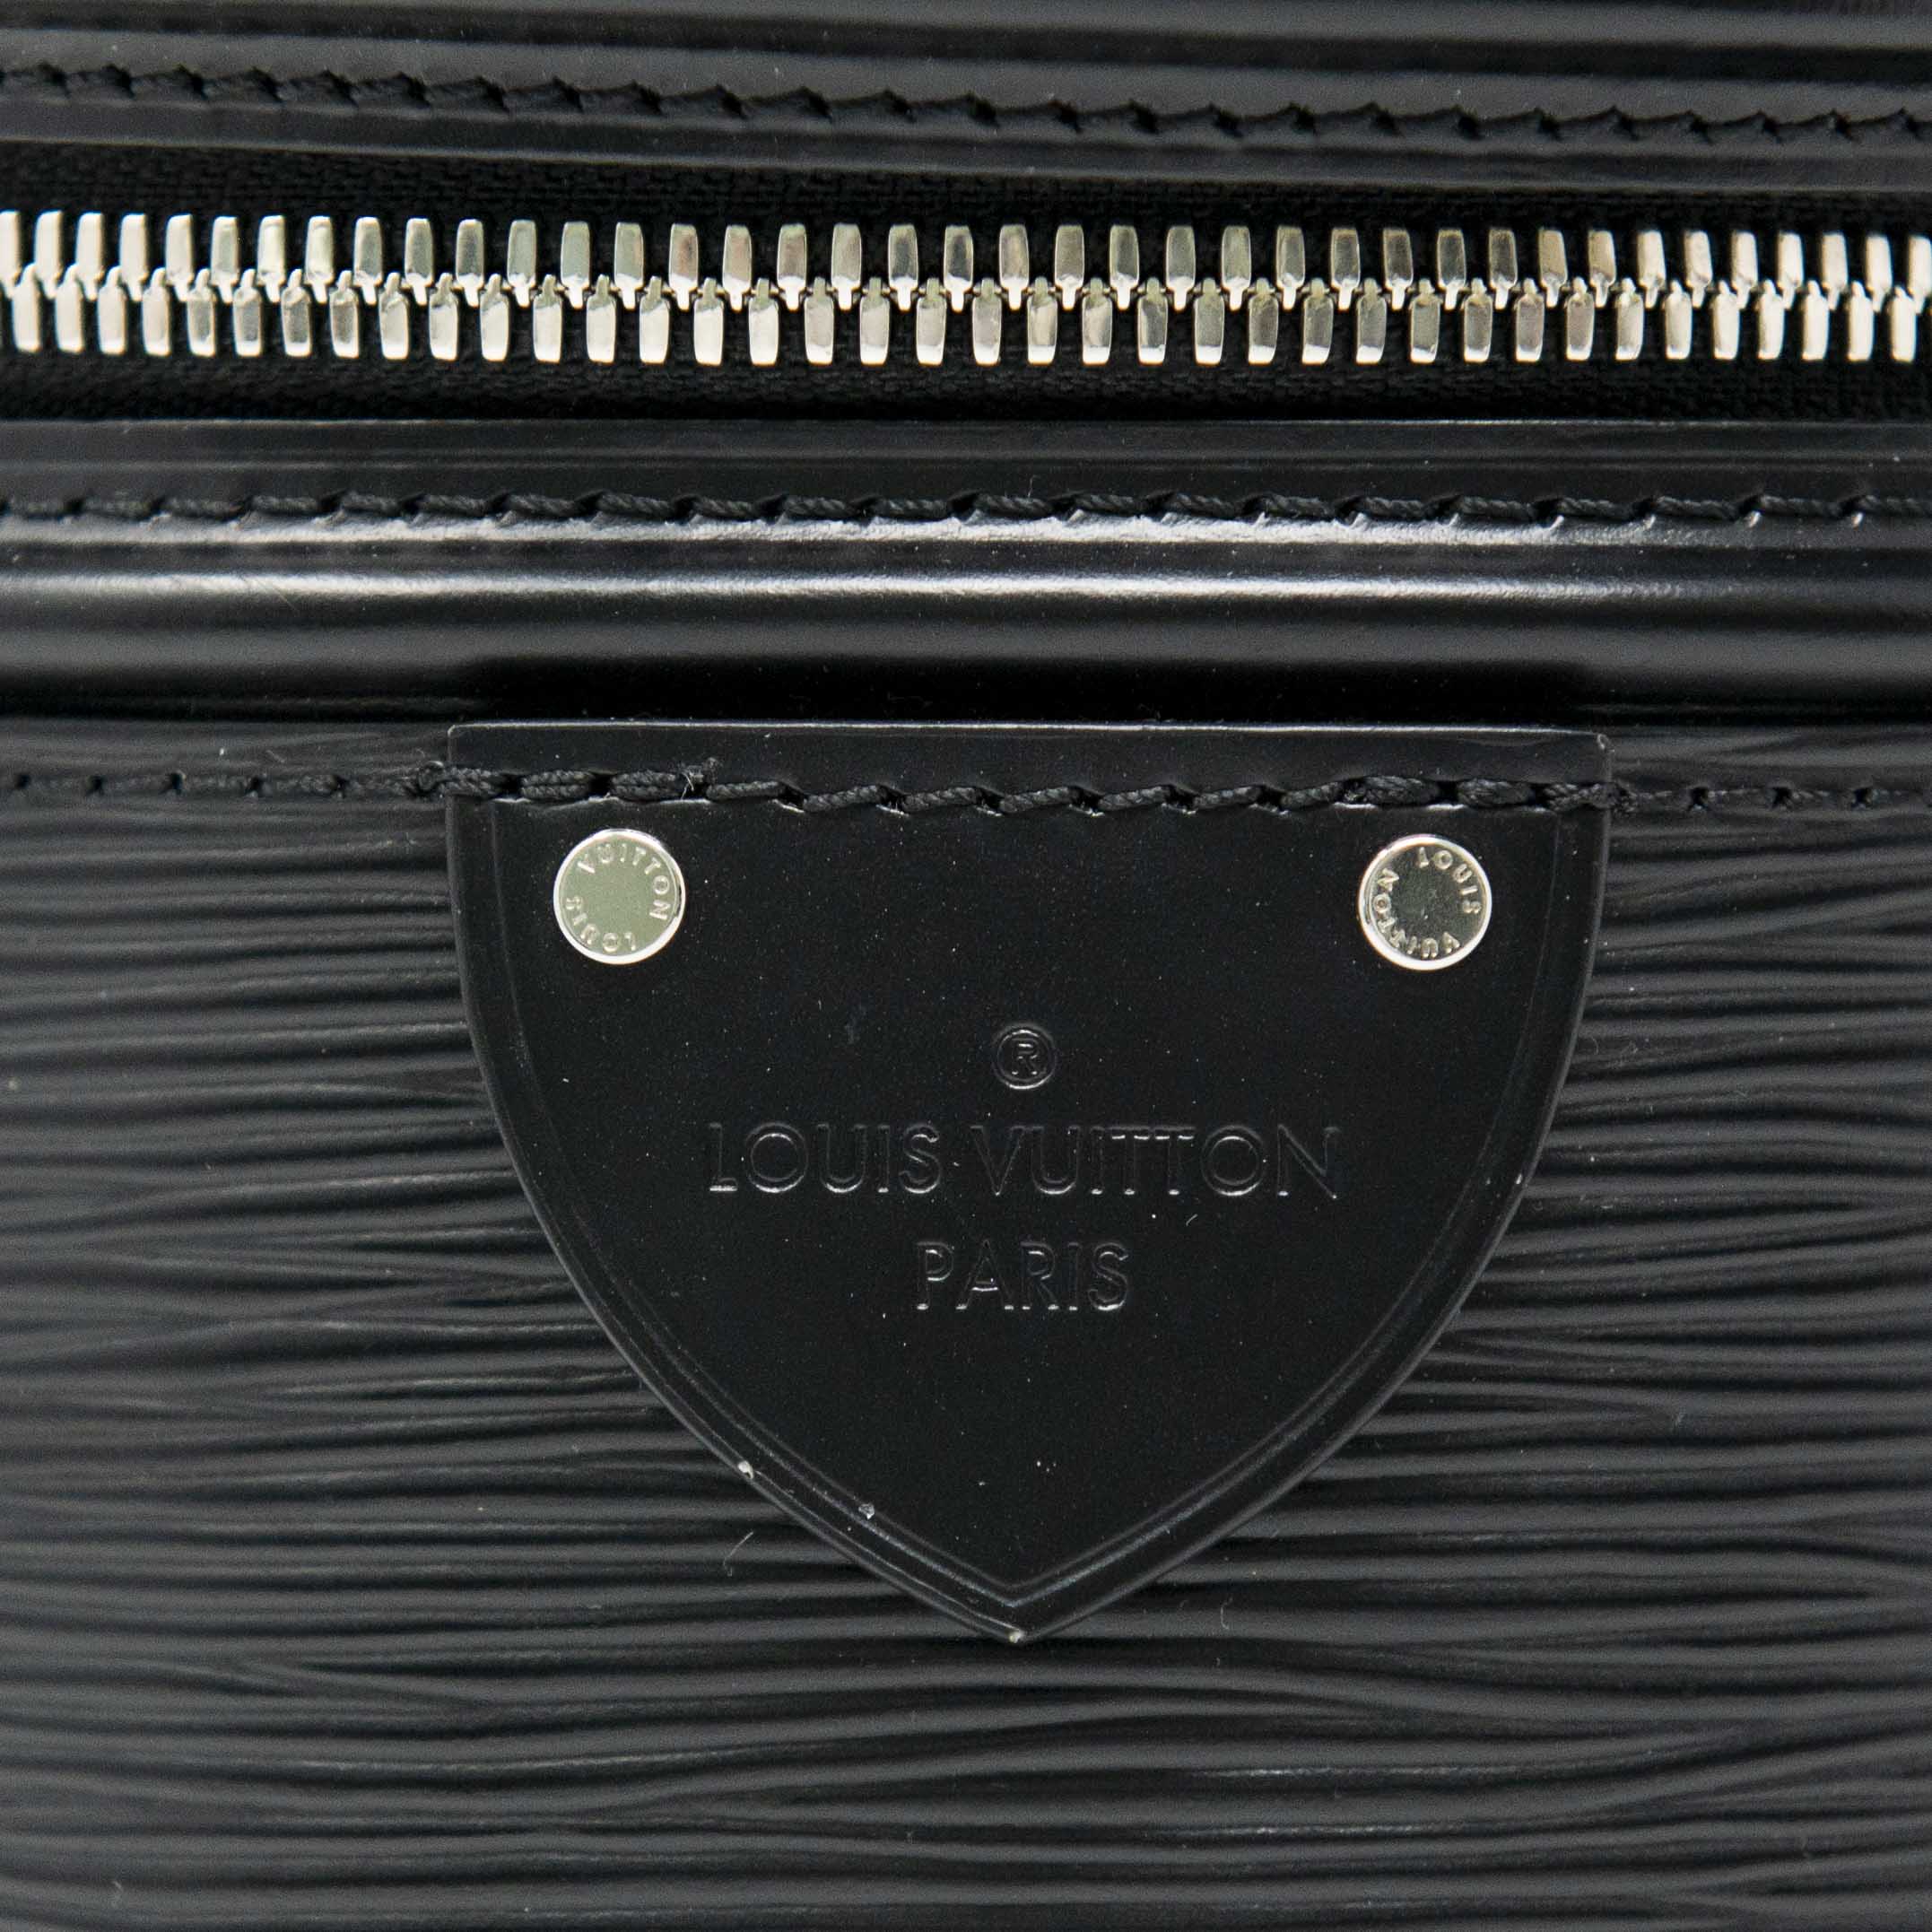 Louis Vuitton Black Epi Cannes Bag